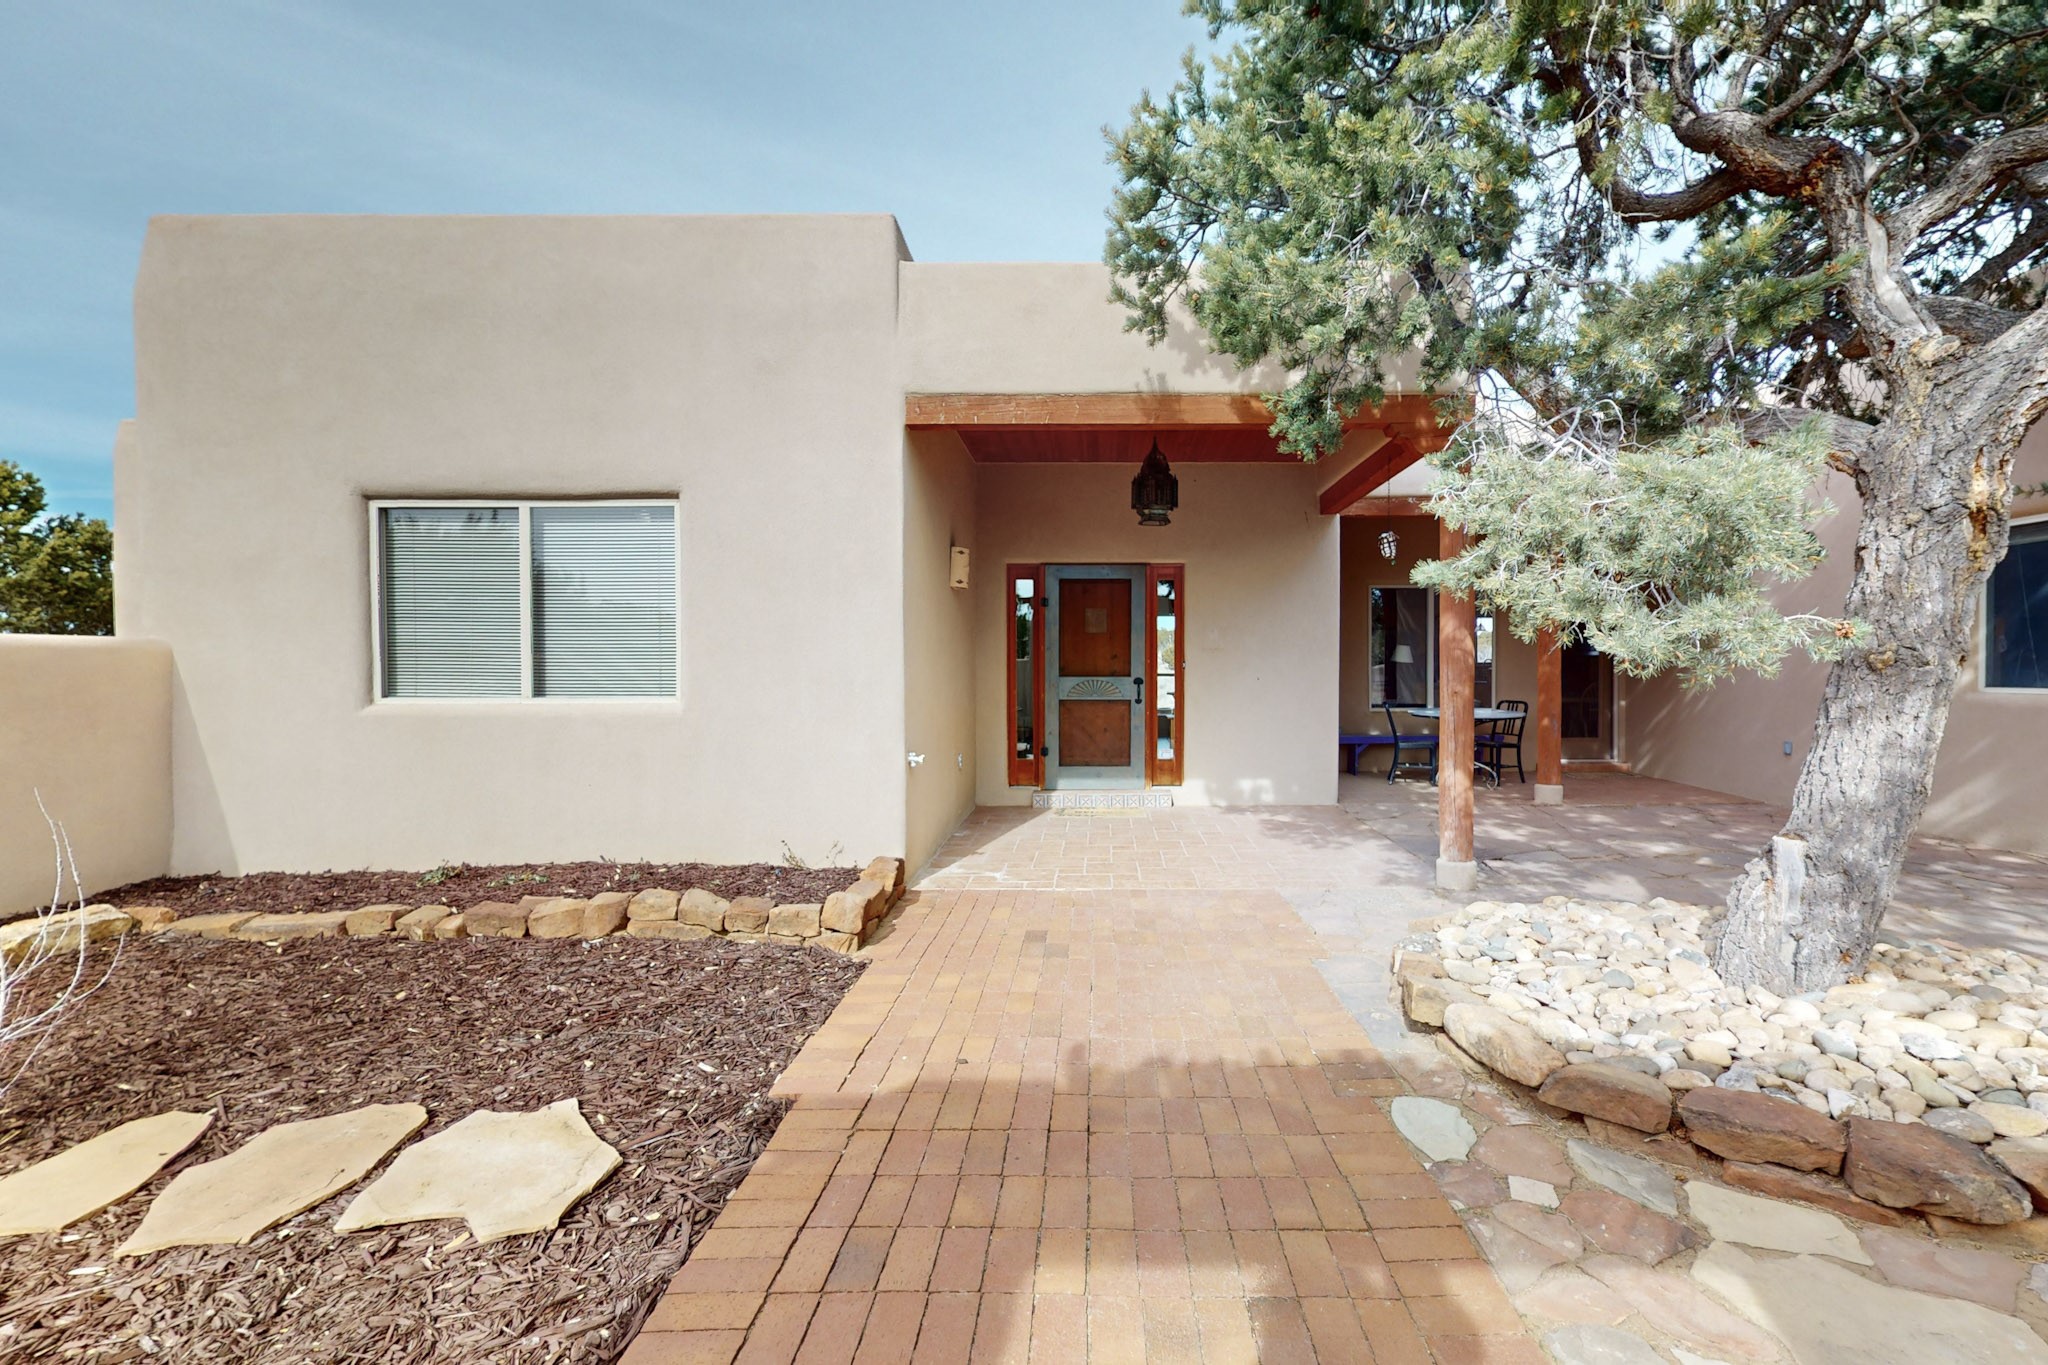 29 Quedo Road, Santa Fe, New Mexico 87508, 3 Bedrooms Bedrooms, ,2 BathroomsBathrooms,Residential,For Sale,29 Quedo Road,202400658